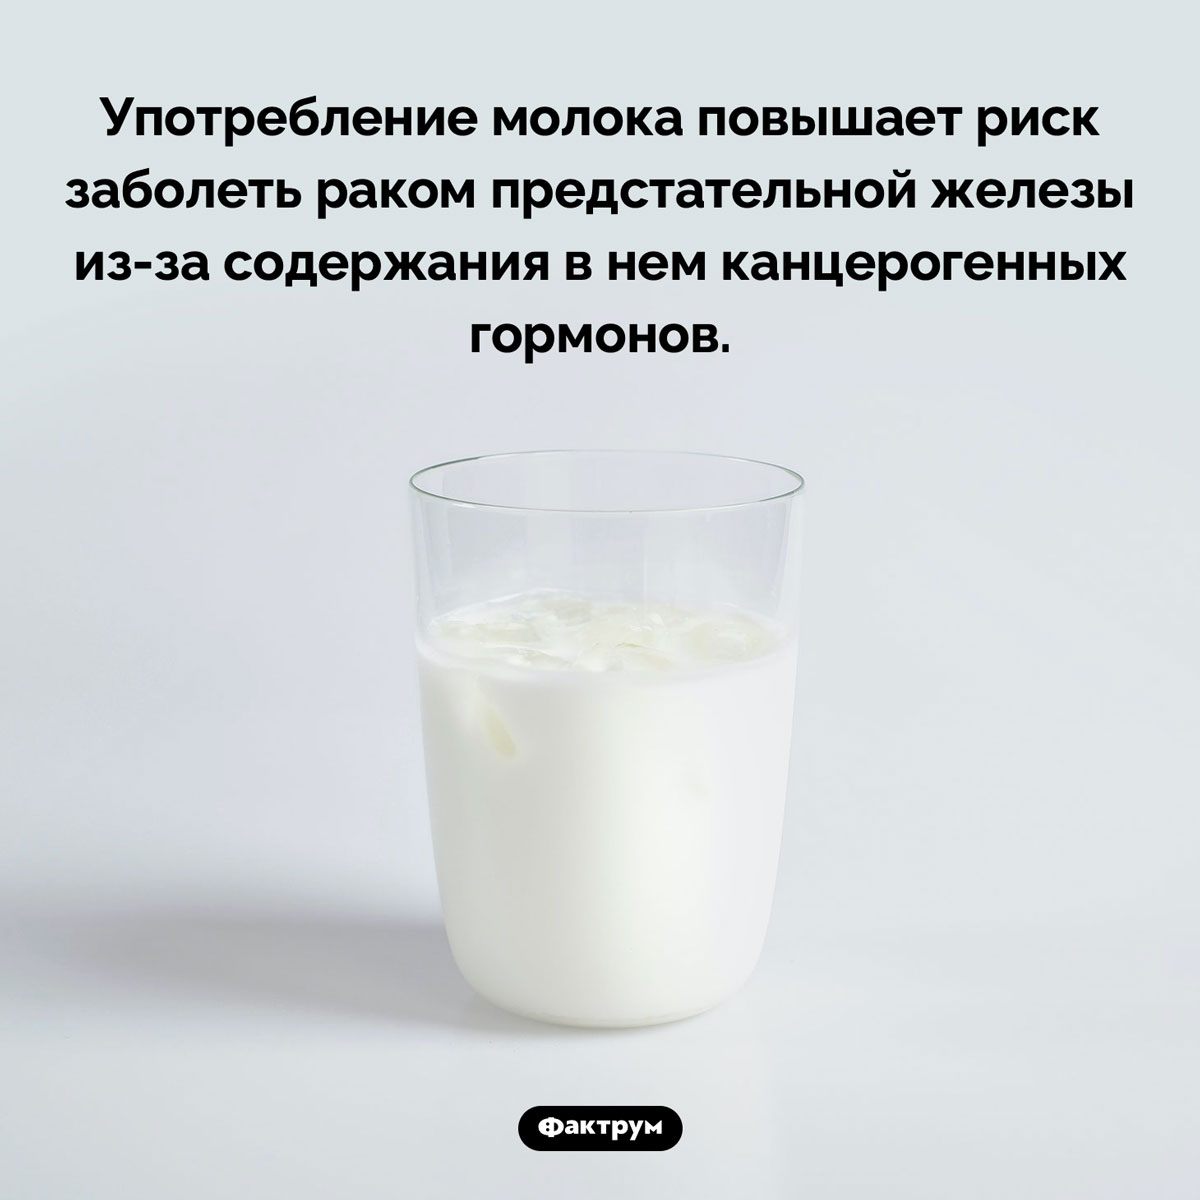 Молоко и рак простаты. Употребление молока повышает риск заболеть раком предстательной железы из-за содержания в нем канцерогенных гормонов.